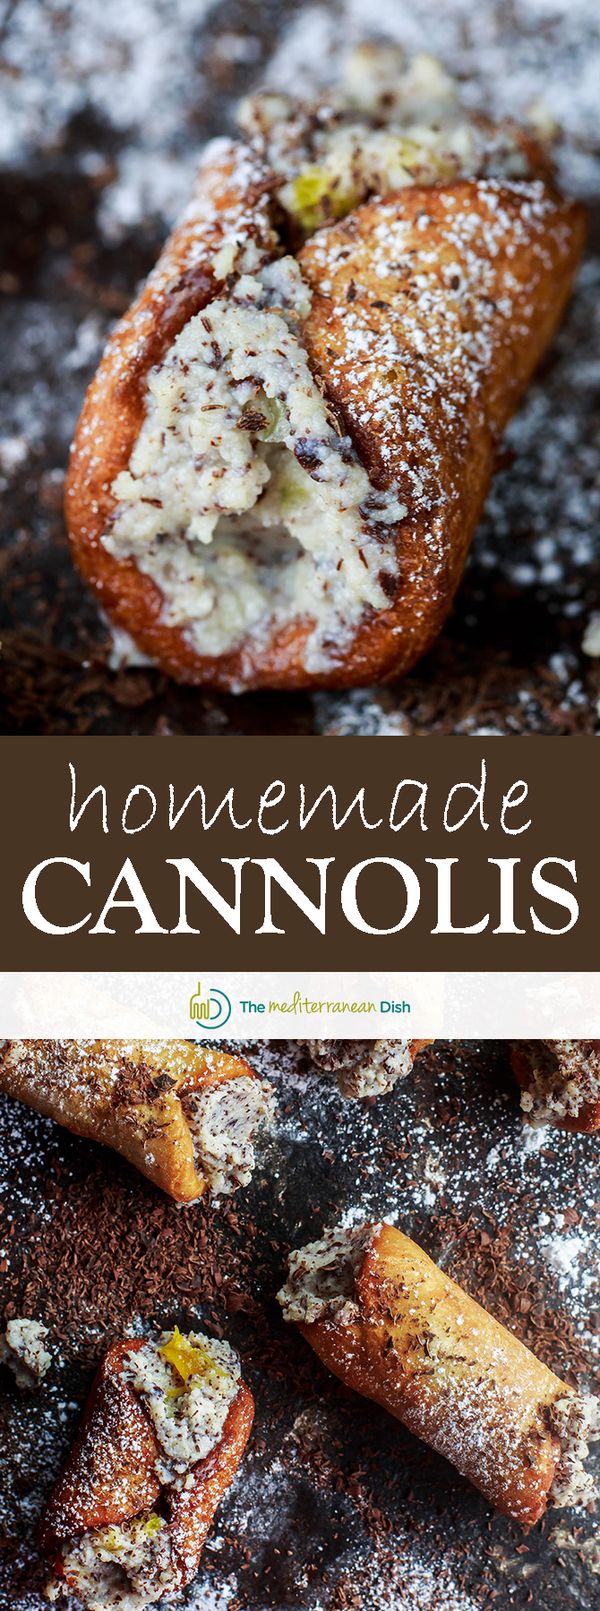 Cannoli Recipe (How to Make Cannolis